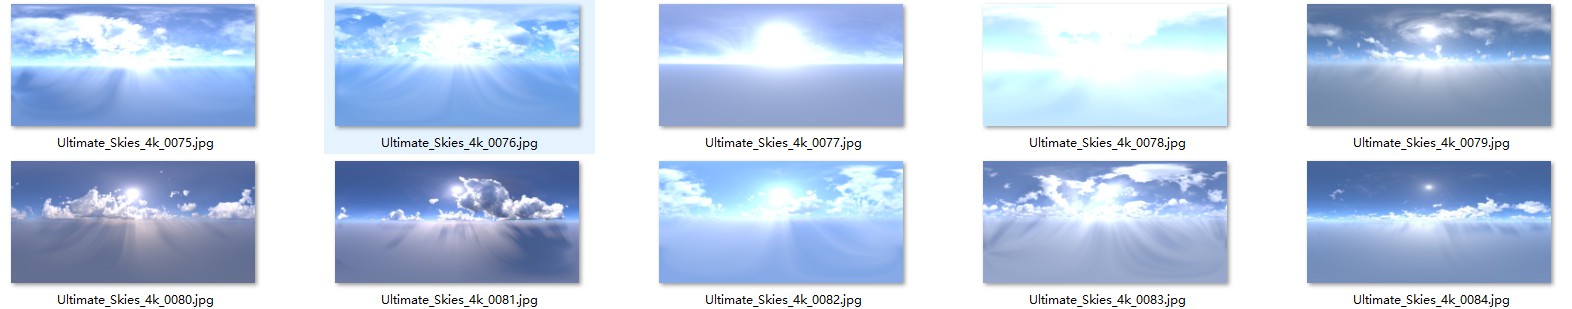 Agancg_HDR_Ultimate_Skies04